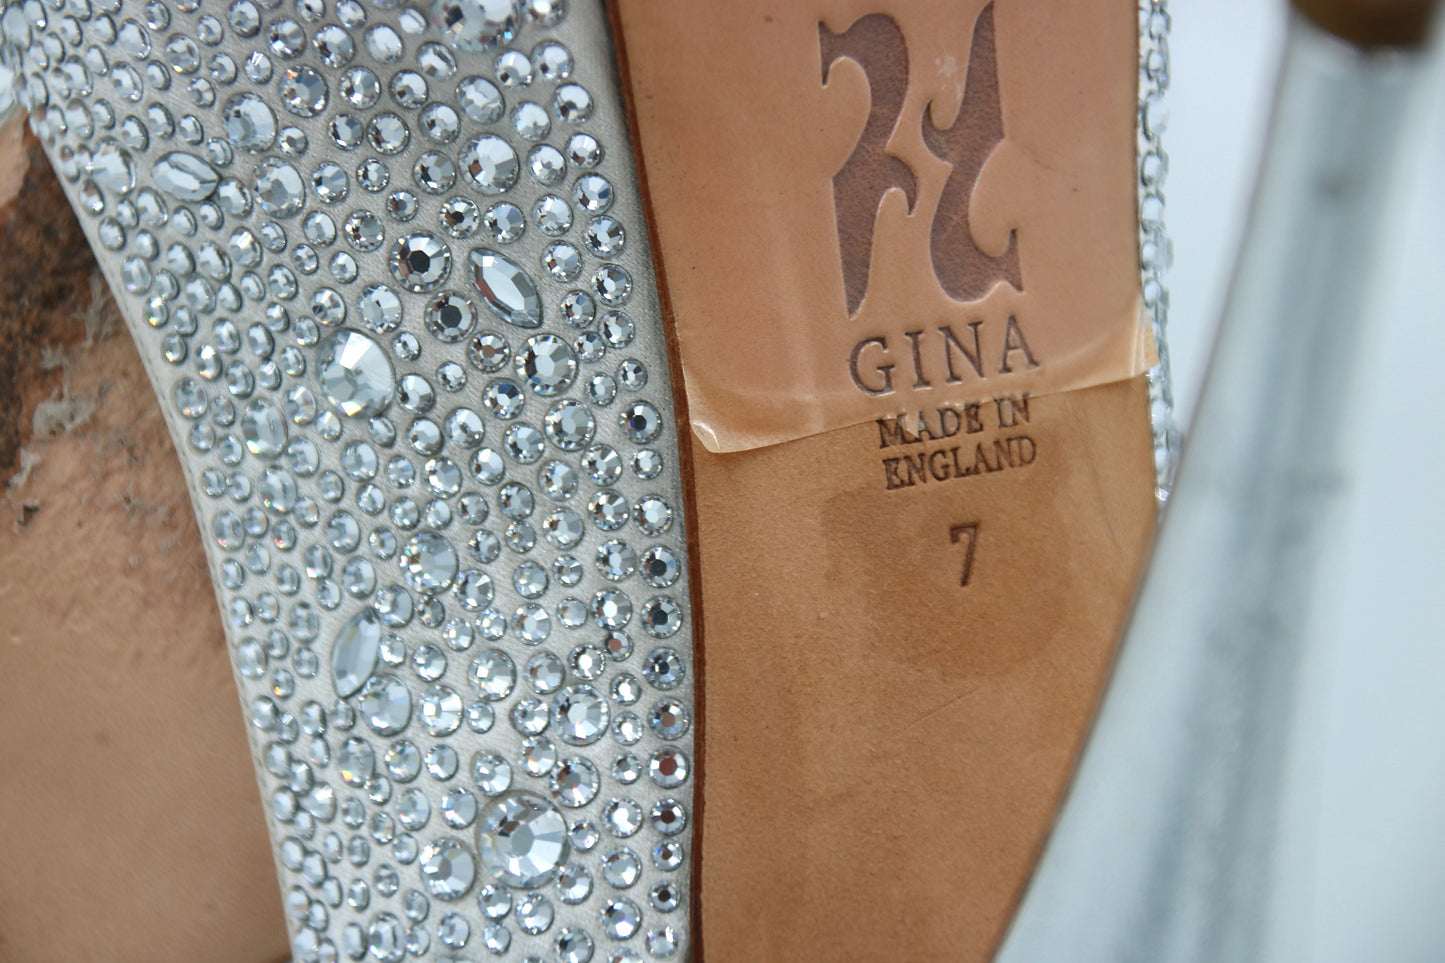 GINA Серебристые атласные сандалии с ремешком на пятке на платформе с открытым носком и кристаллами